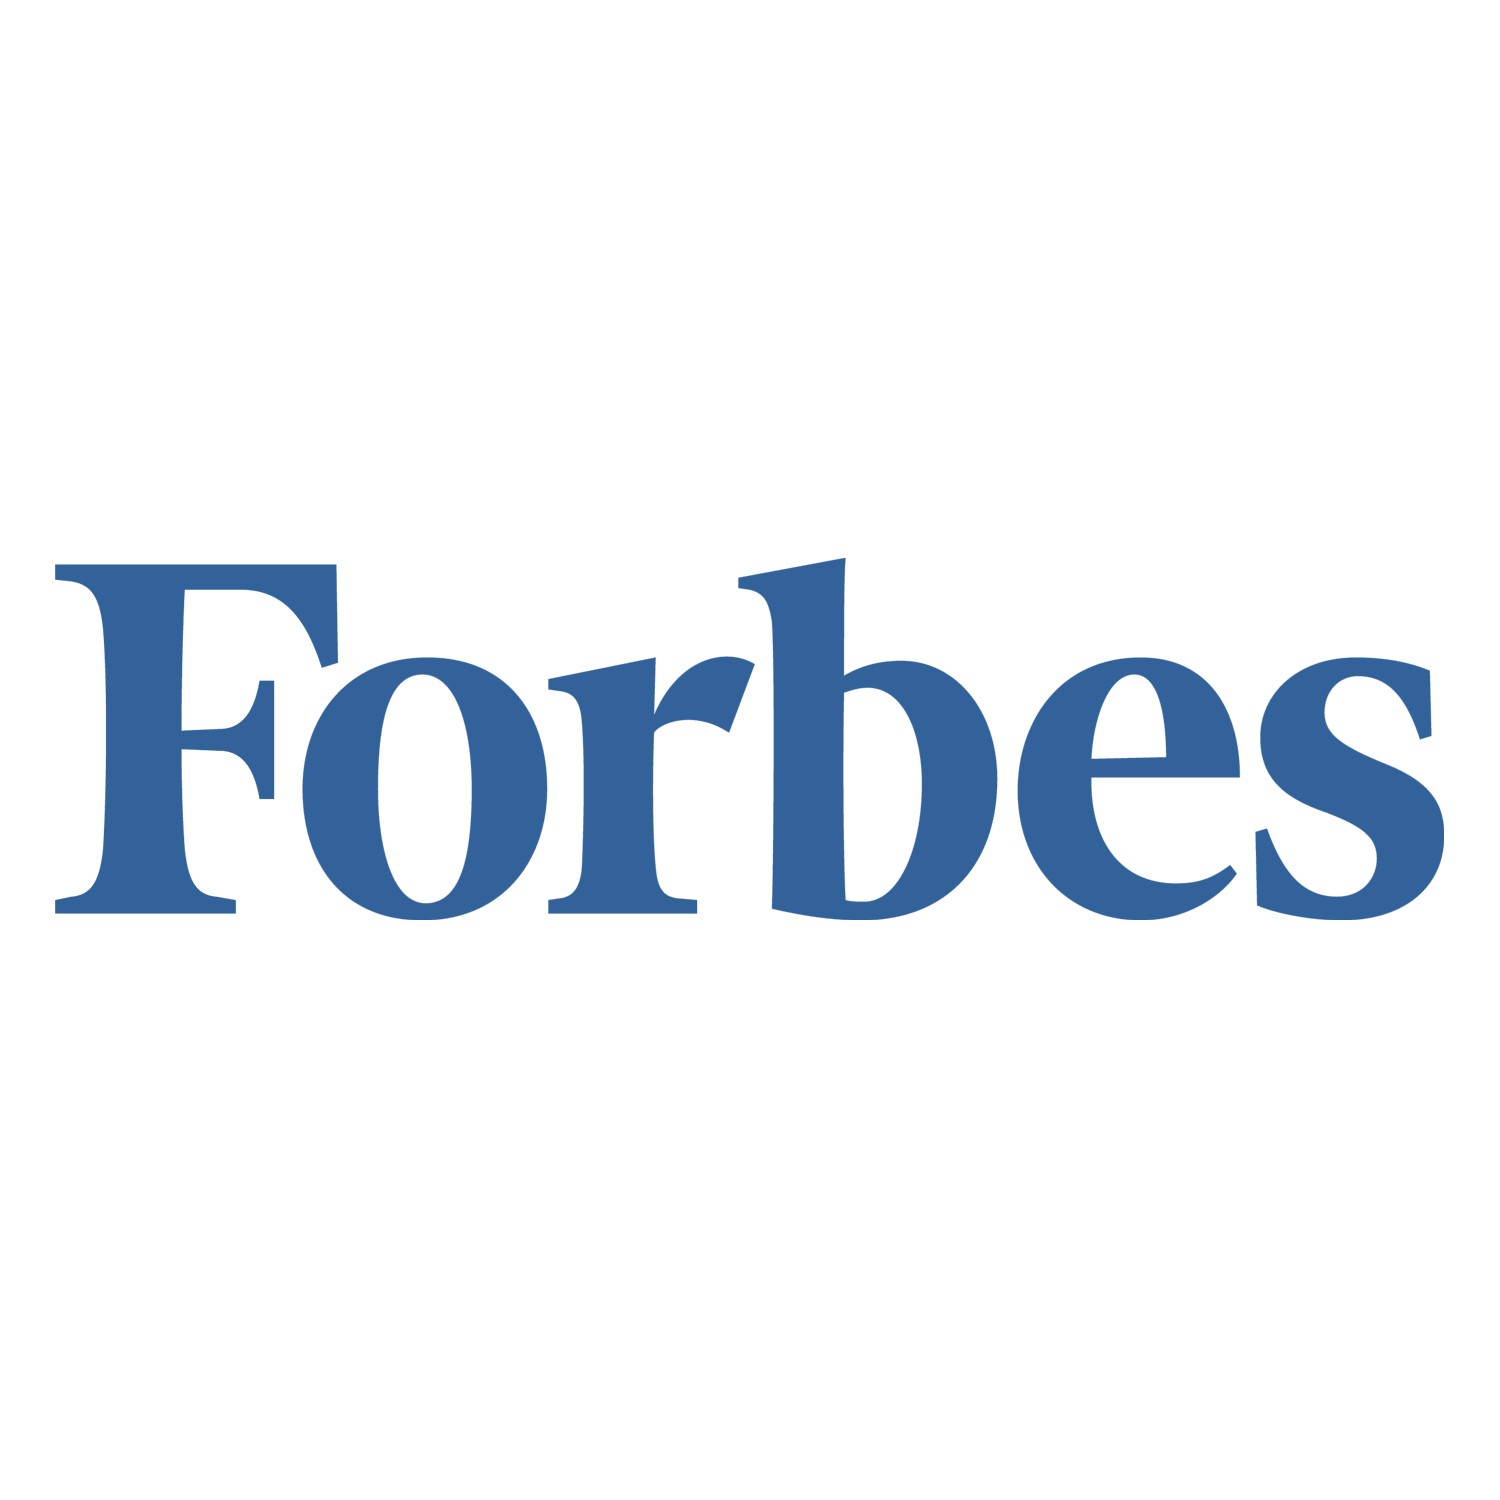 Американський арбітраж остаточно заборонив UMH використовувати  бренд Forbes